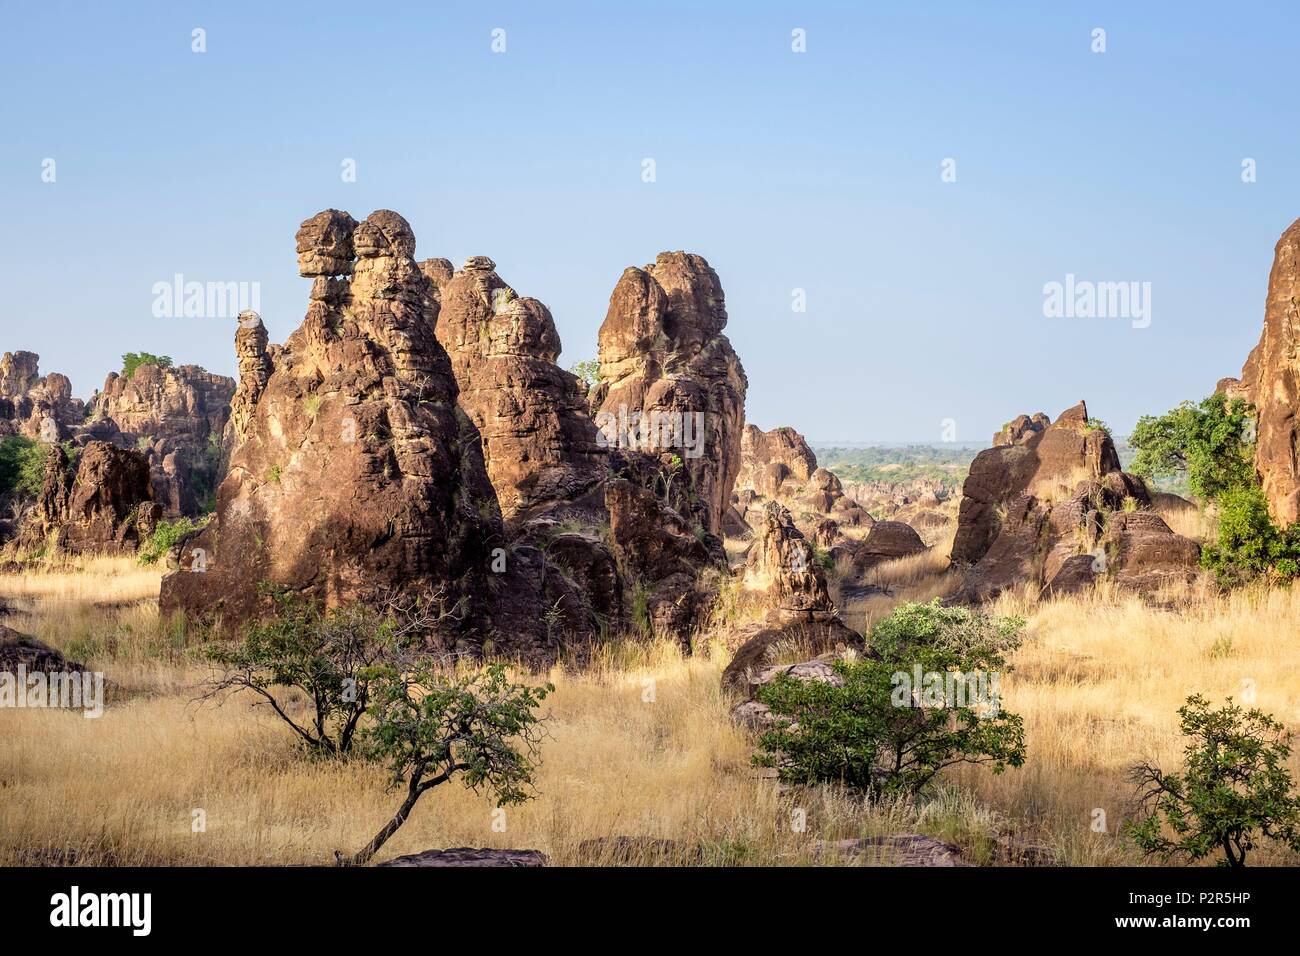 Le Burkina Faso, région des Cascades, Sindou, pays de l'ethnie sénoufo, les pics de Sindou pitons de grès sont sculptés par la nature et un lieu sacré pour les Senoufos Banque D'Images